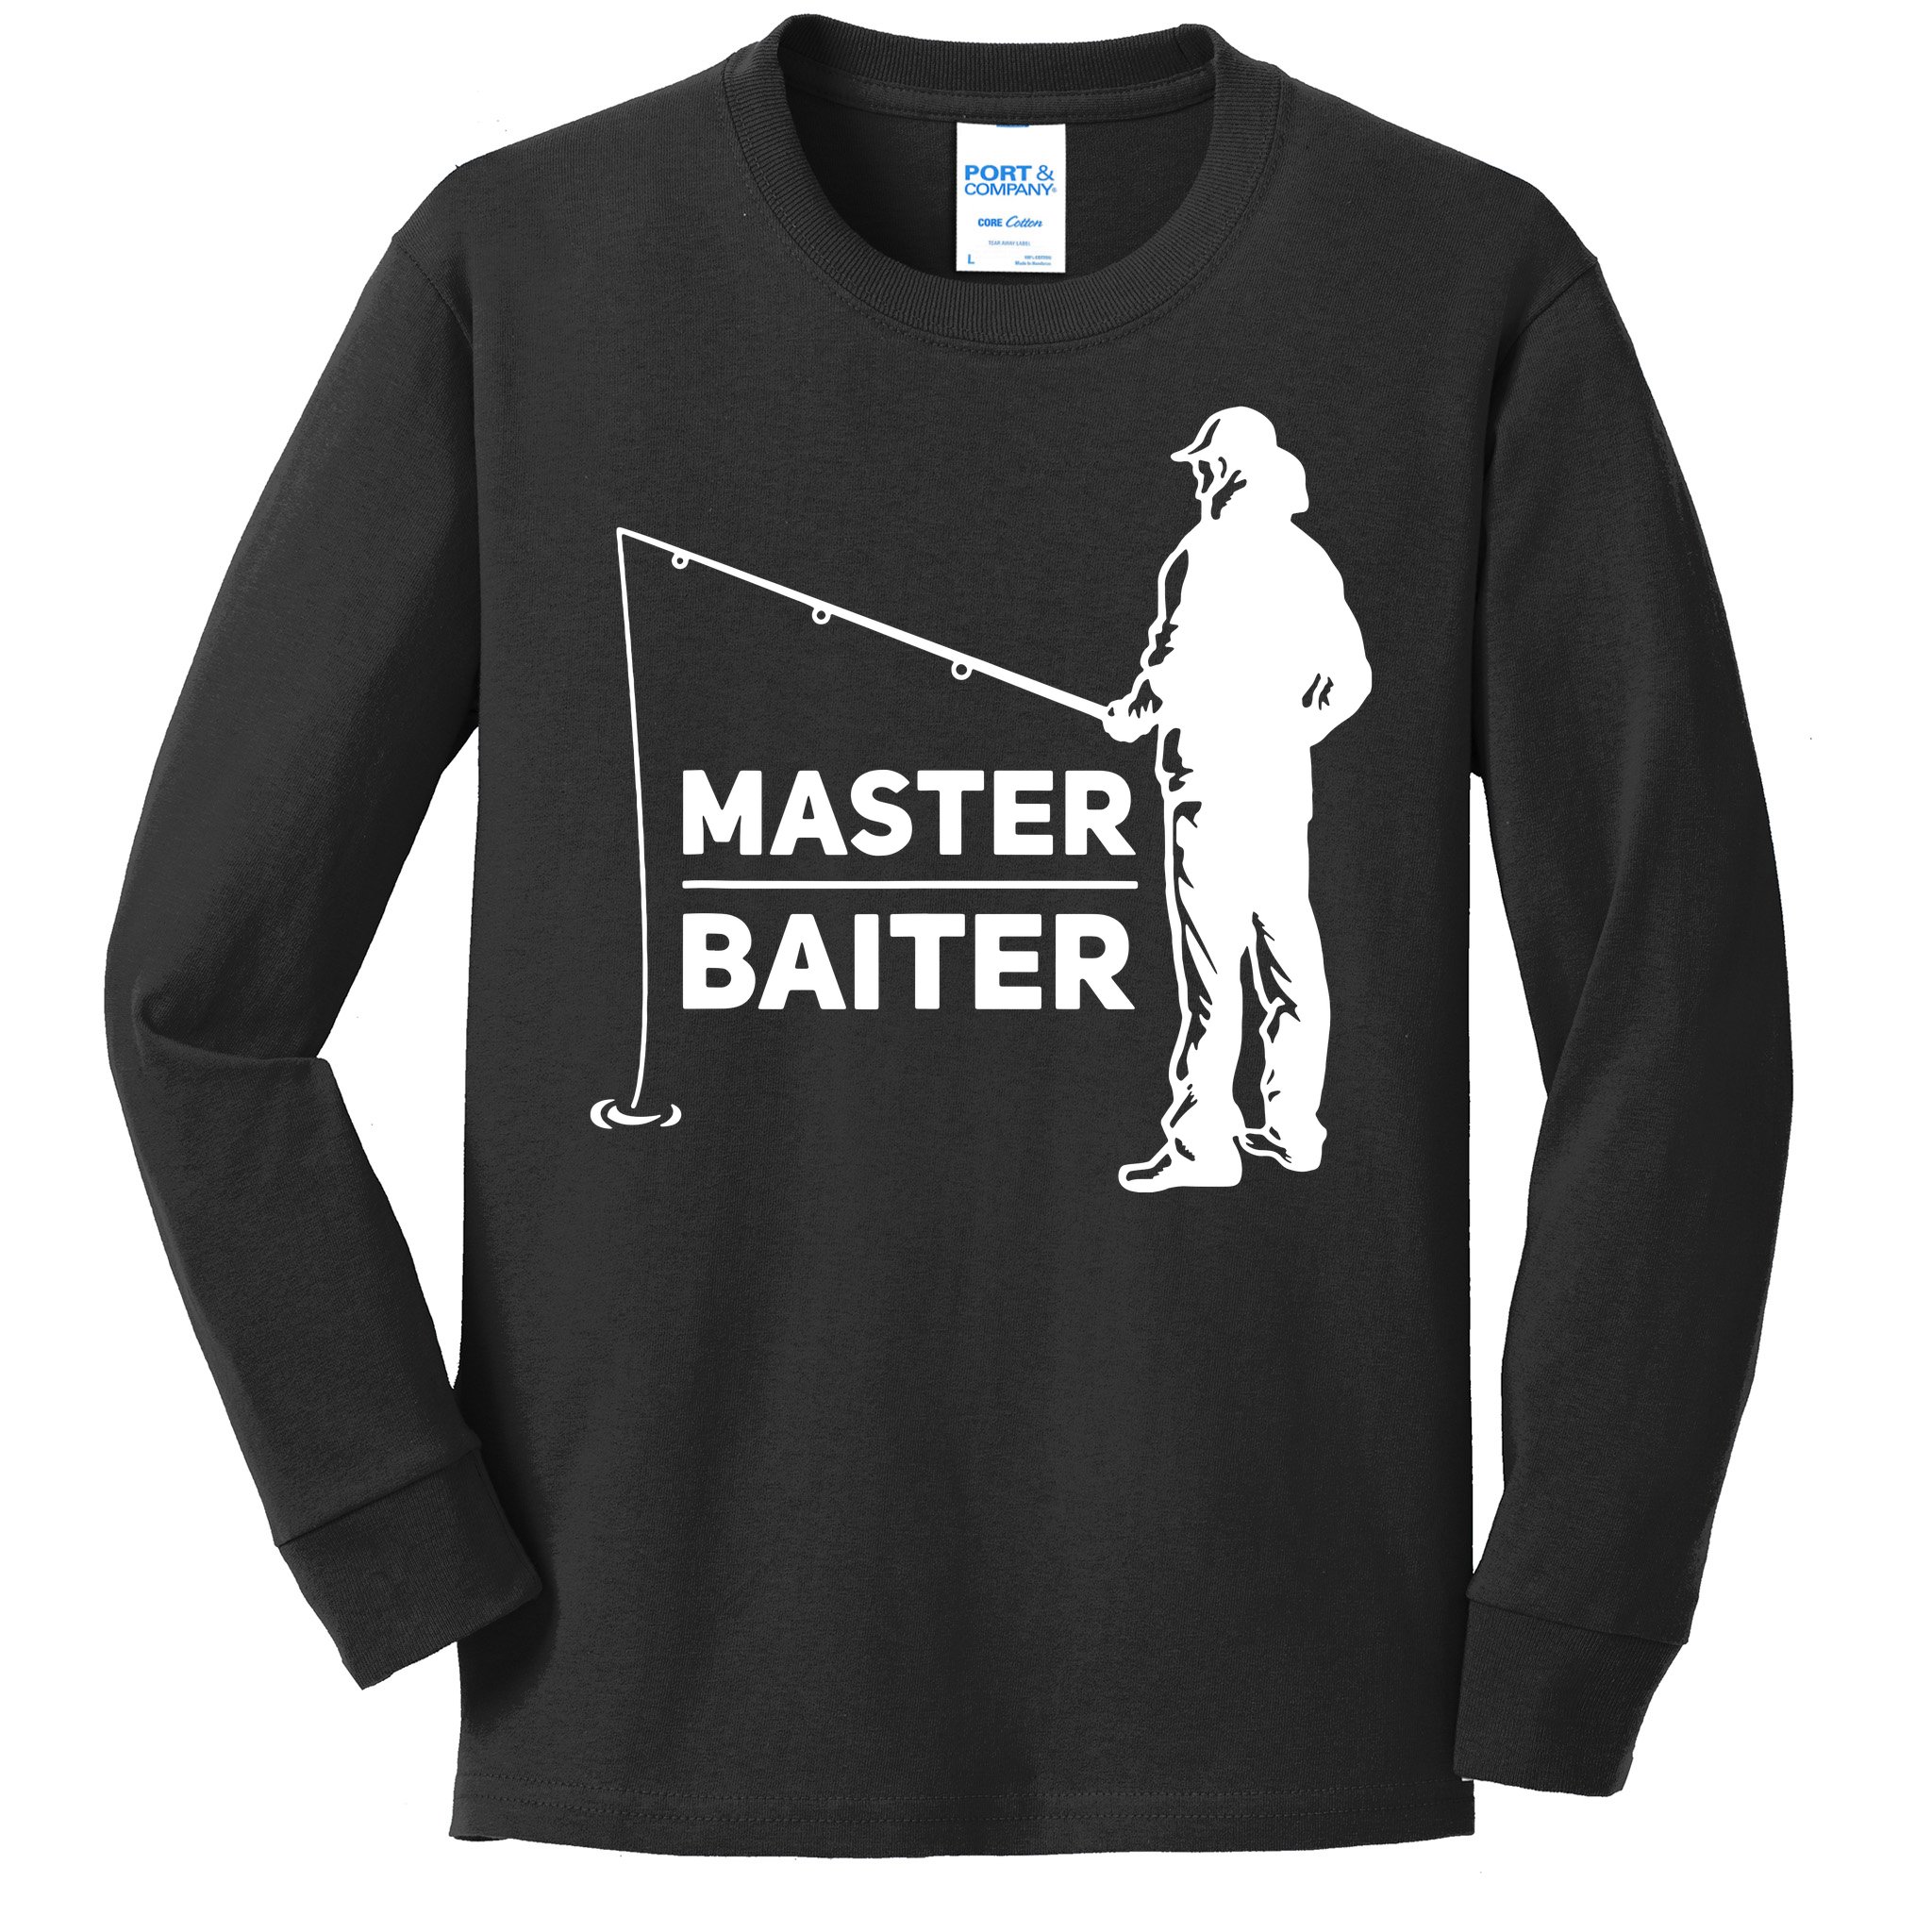 https://images3.teeshirtpalace.com/images/productImages/fsm4888491-funny-saying-master-baiter-fishing-fishermen--black-ylt-garment.jpg